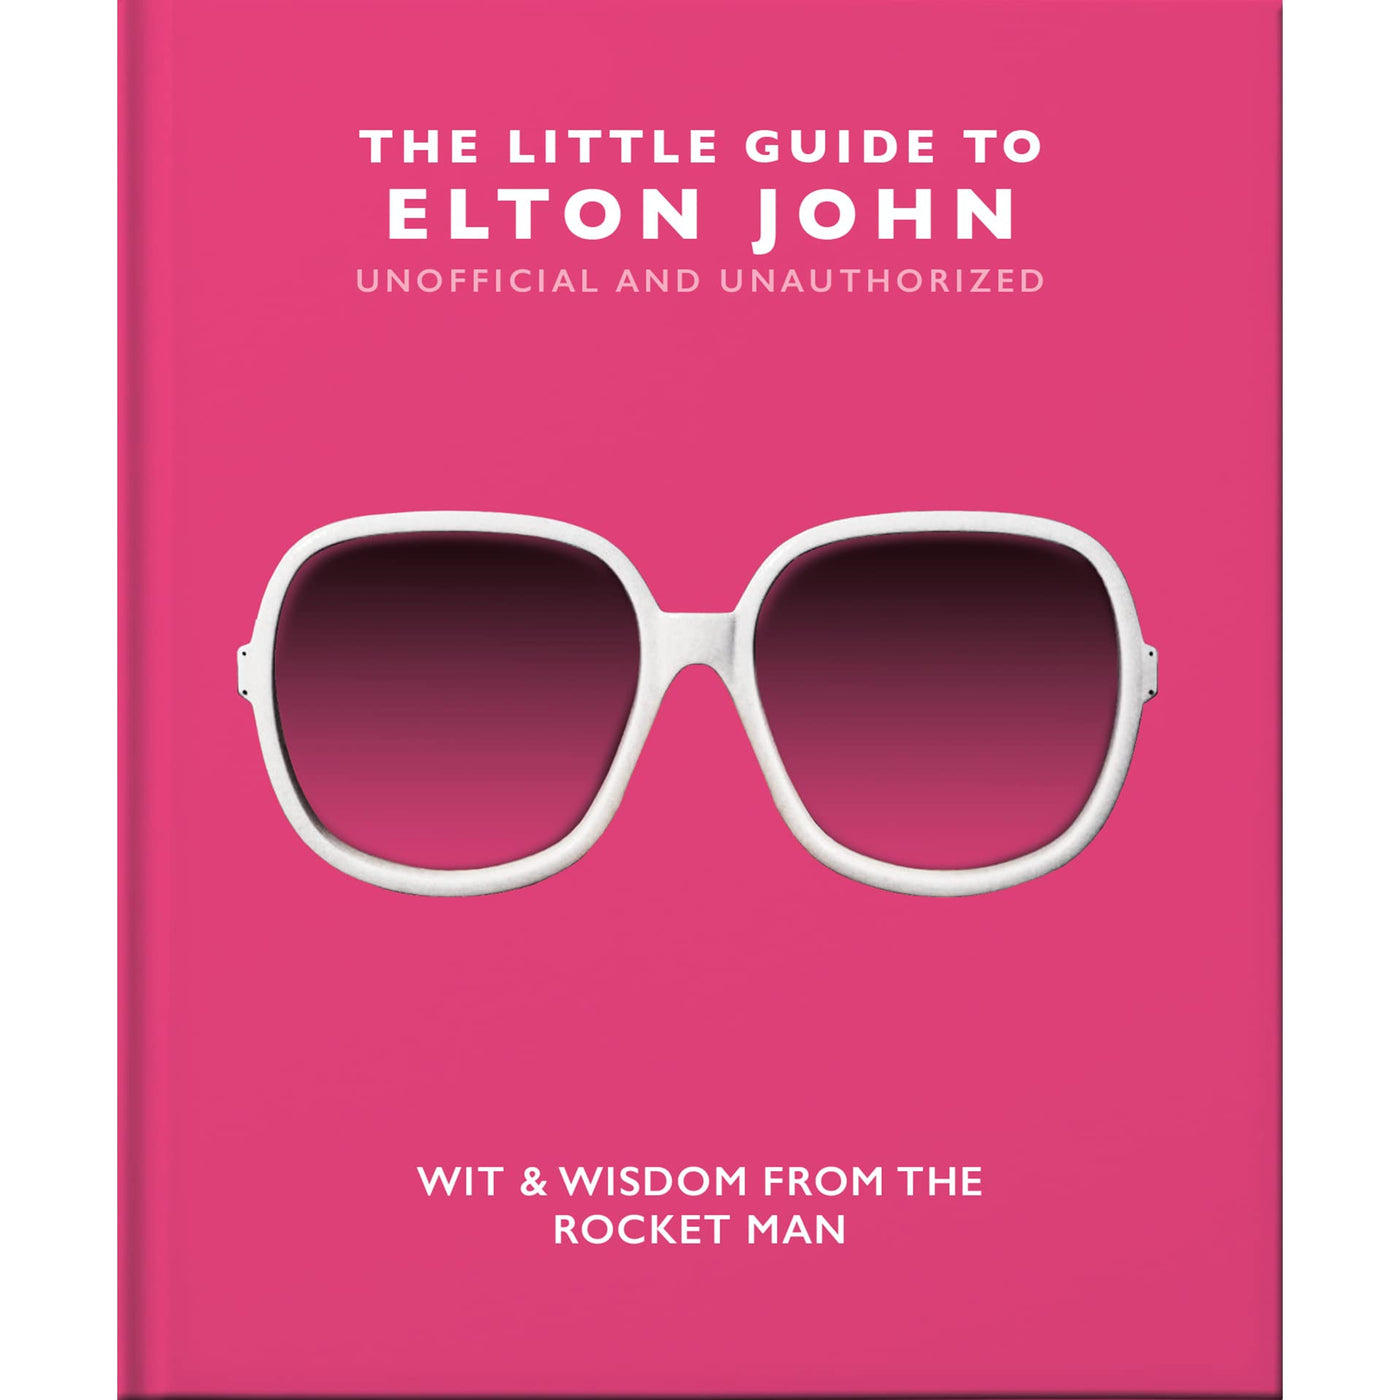 The Little Guide To Elton John